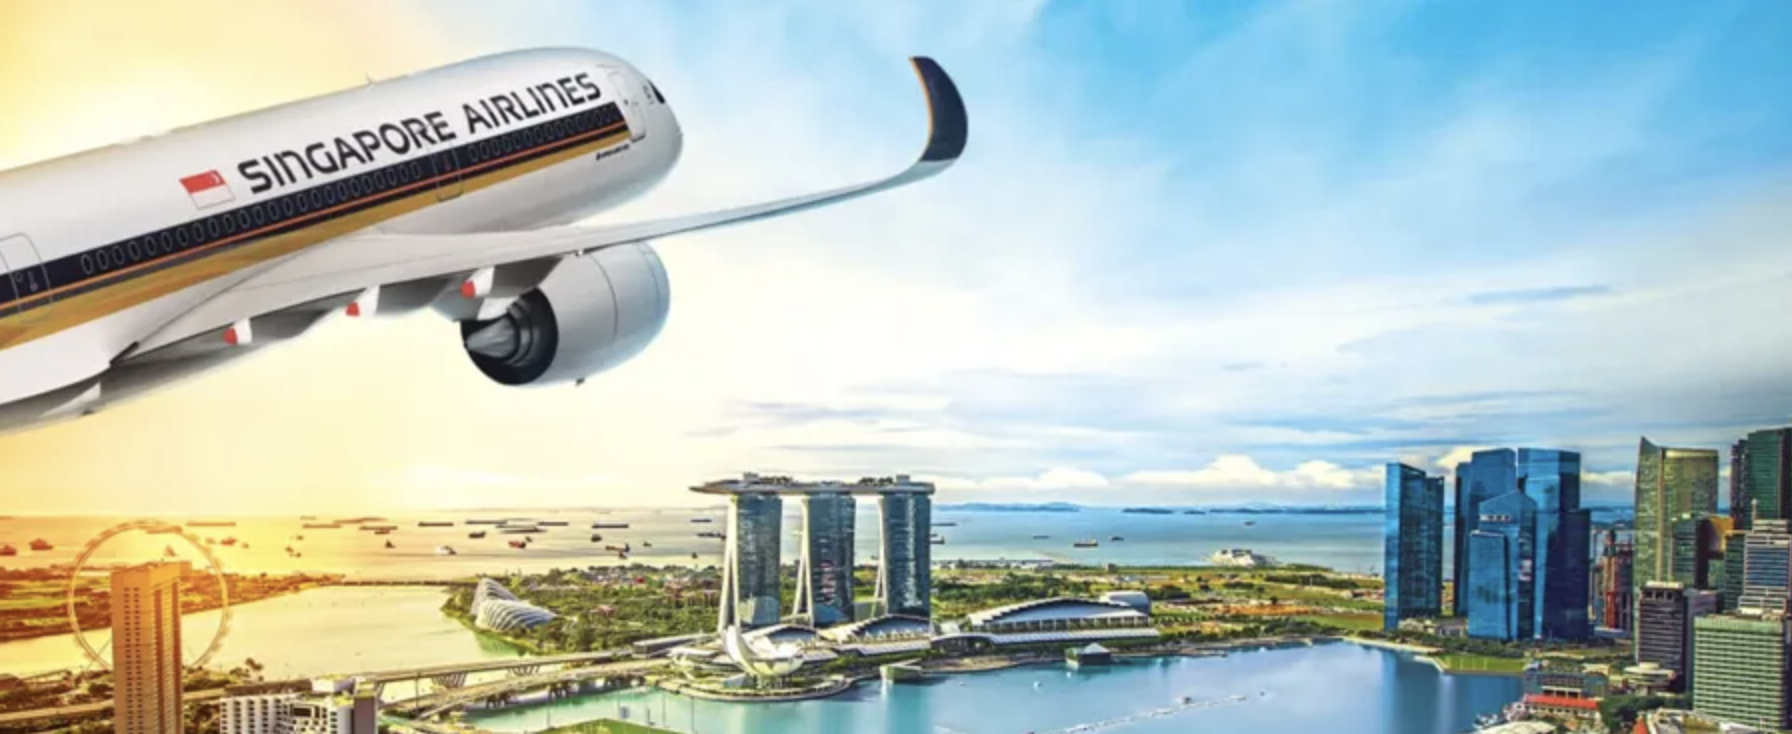 飛機票價優惠 機票優惠 新加坡航空 優選經濟艙 中銀信用卡優惠 KrisFlyer會員 PPS俱樂部會員 機上Wi-Fi